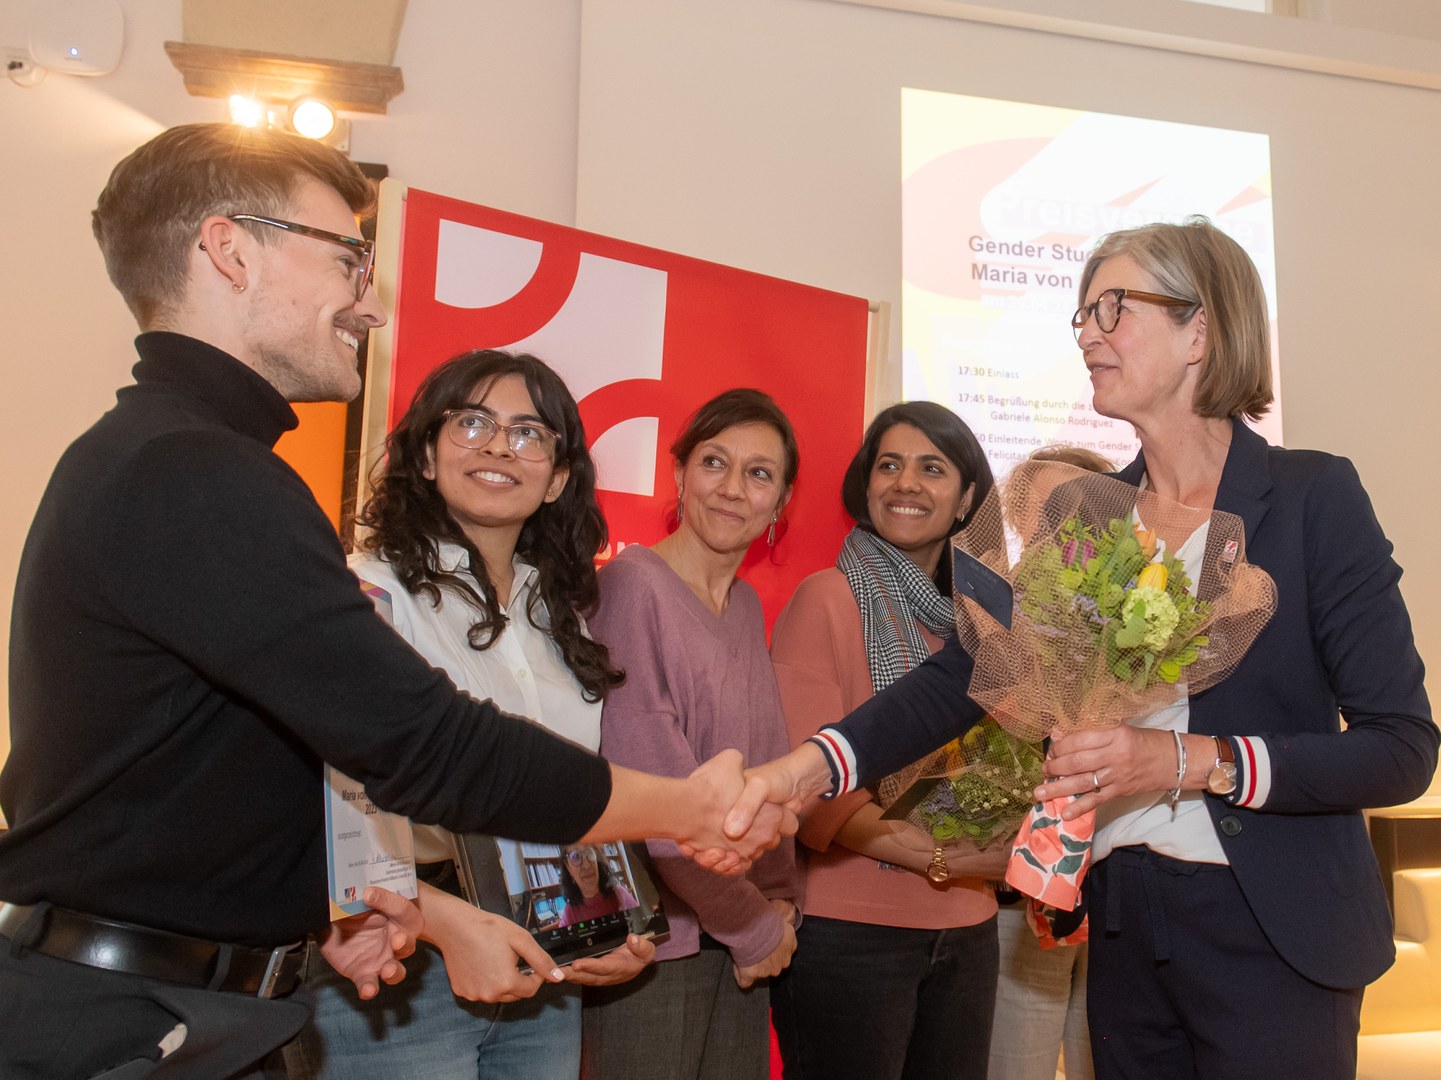 Das Zentrale Gleichstellungsbüro der Universität Bonn hat den Gender Studies Prize 2023 und den Maria von Linden-Gleichstellungspreis 2023 vergeben.